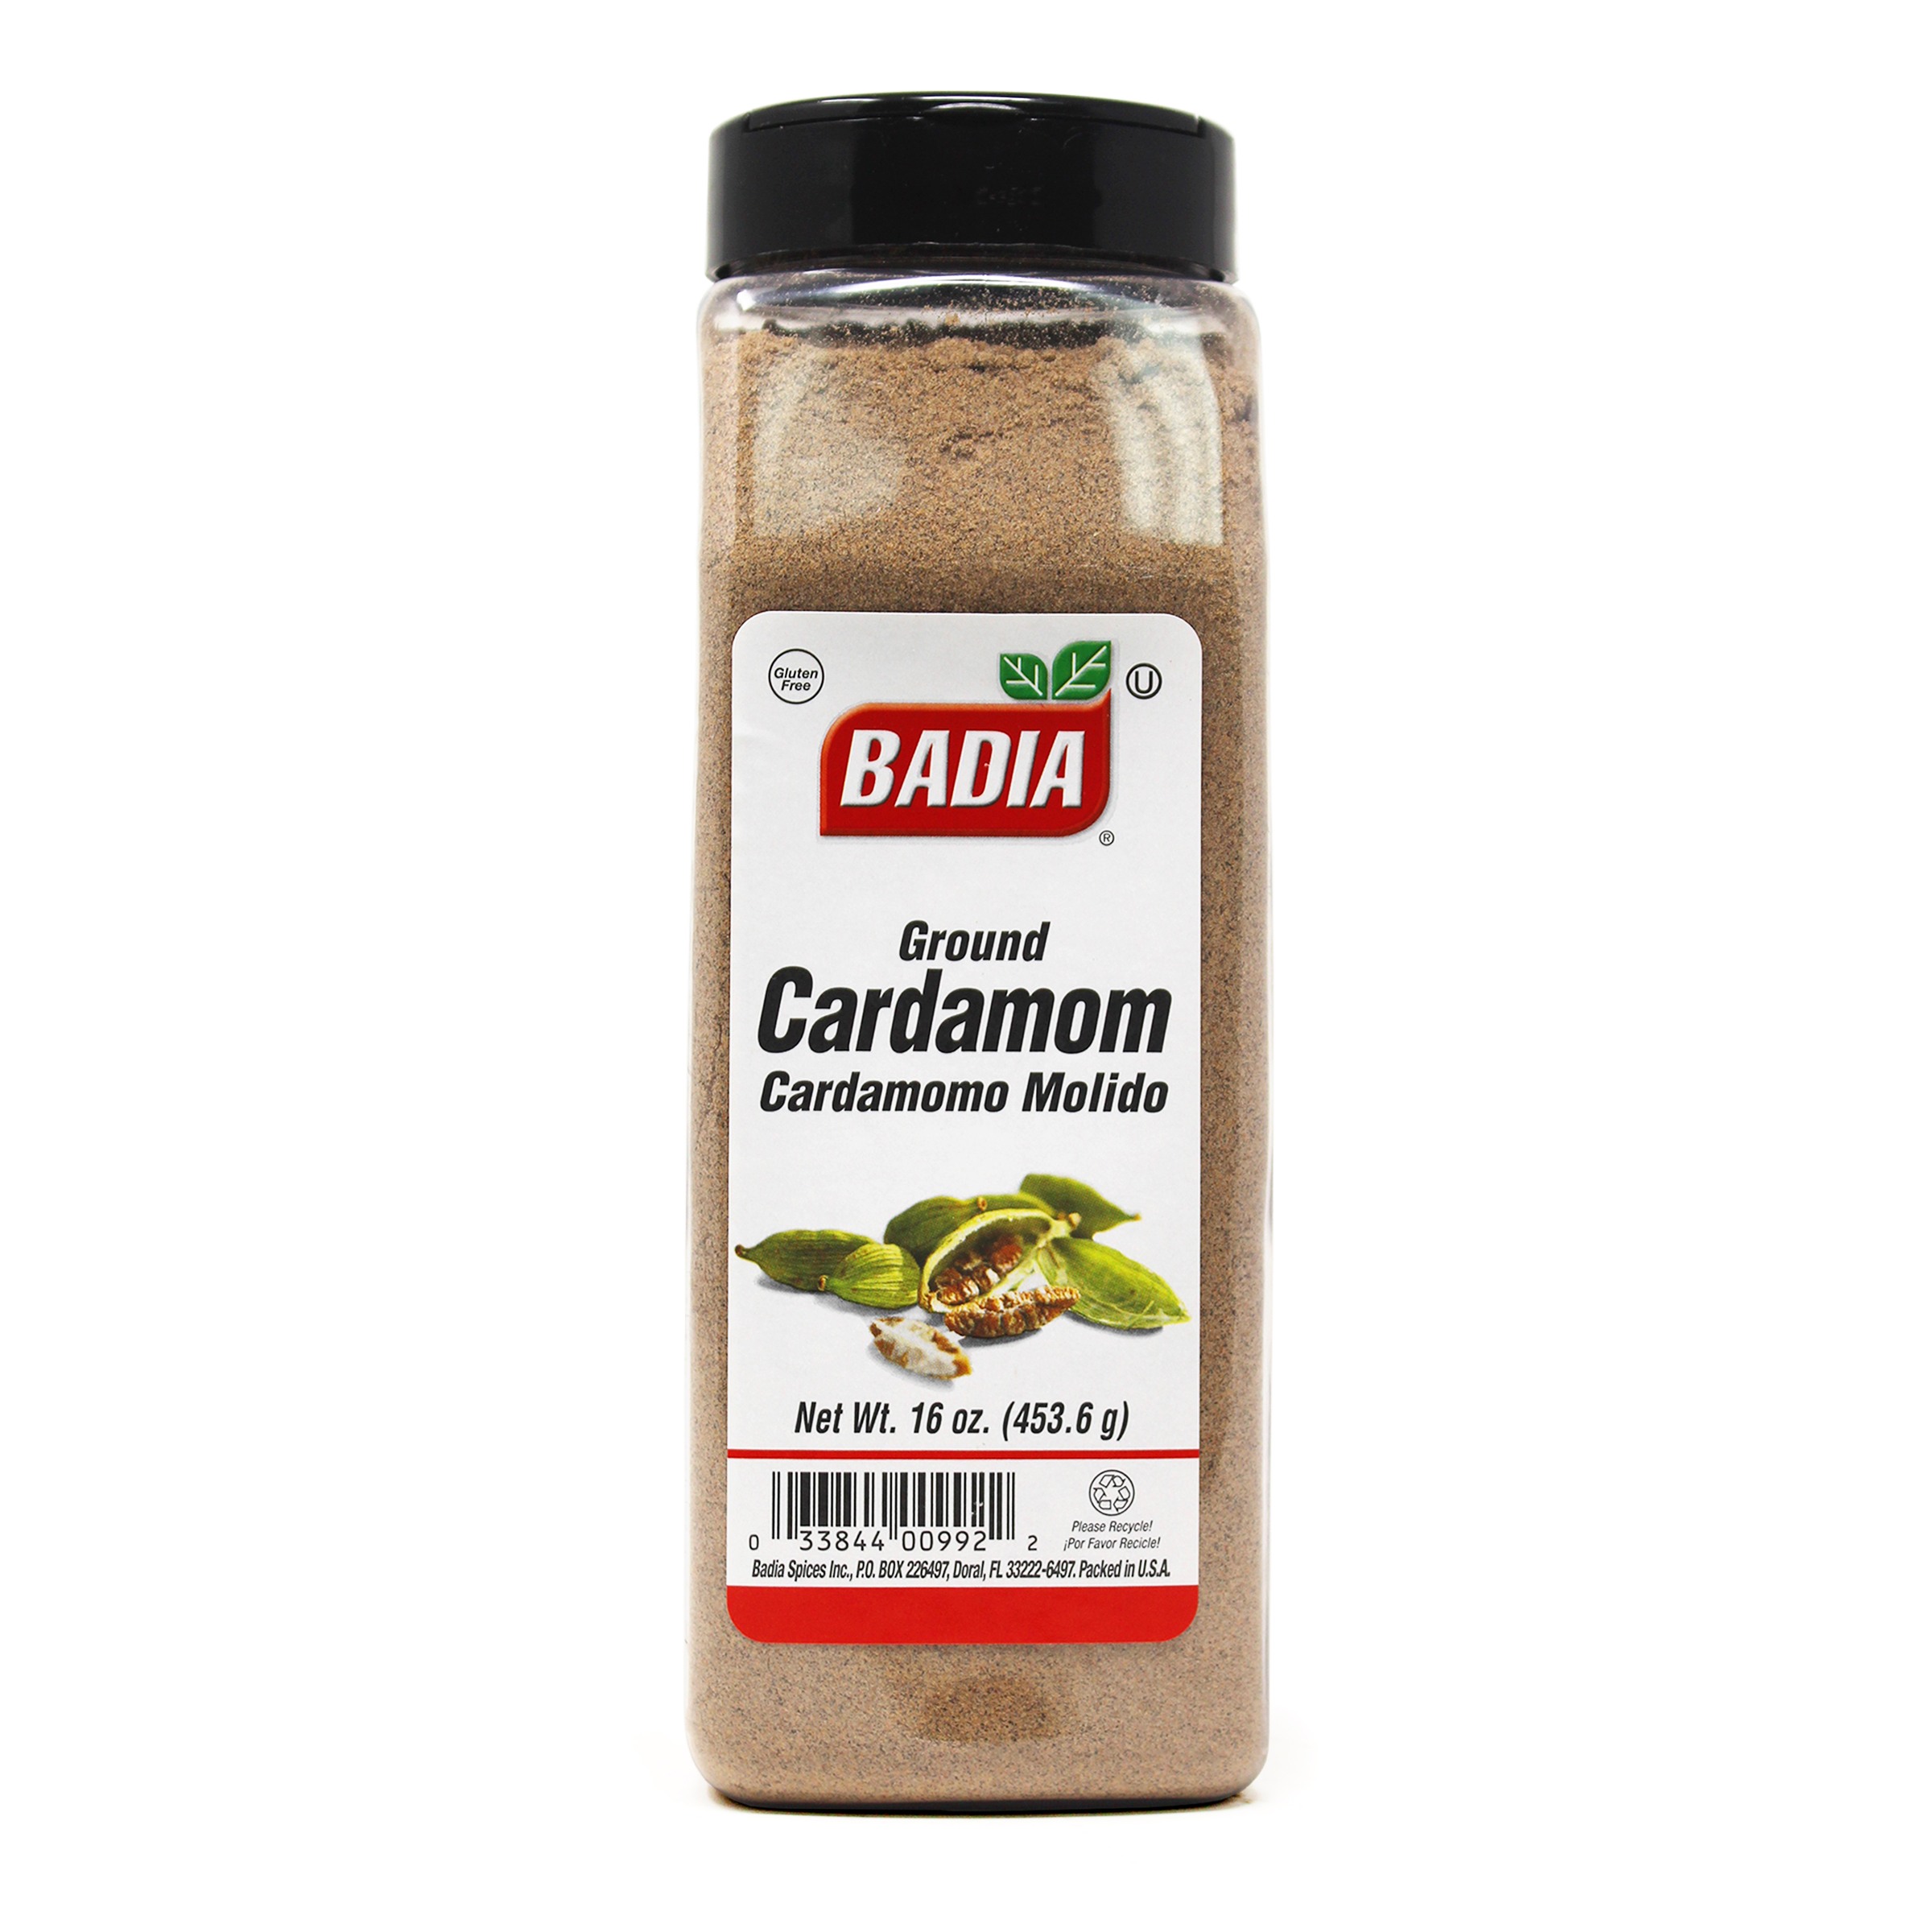 Xxx Cardamom - Cardamom Ground â€“ 16 oz â€“ Bodega Badia